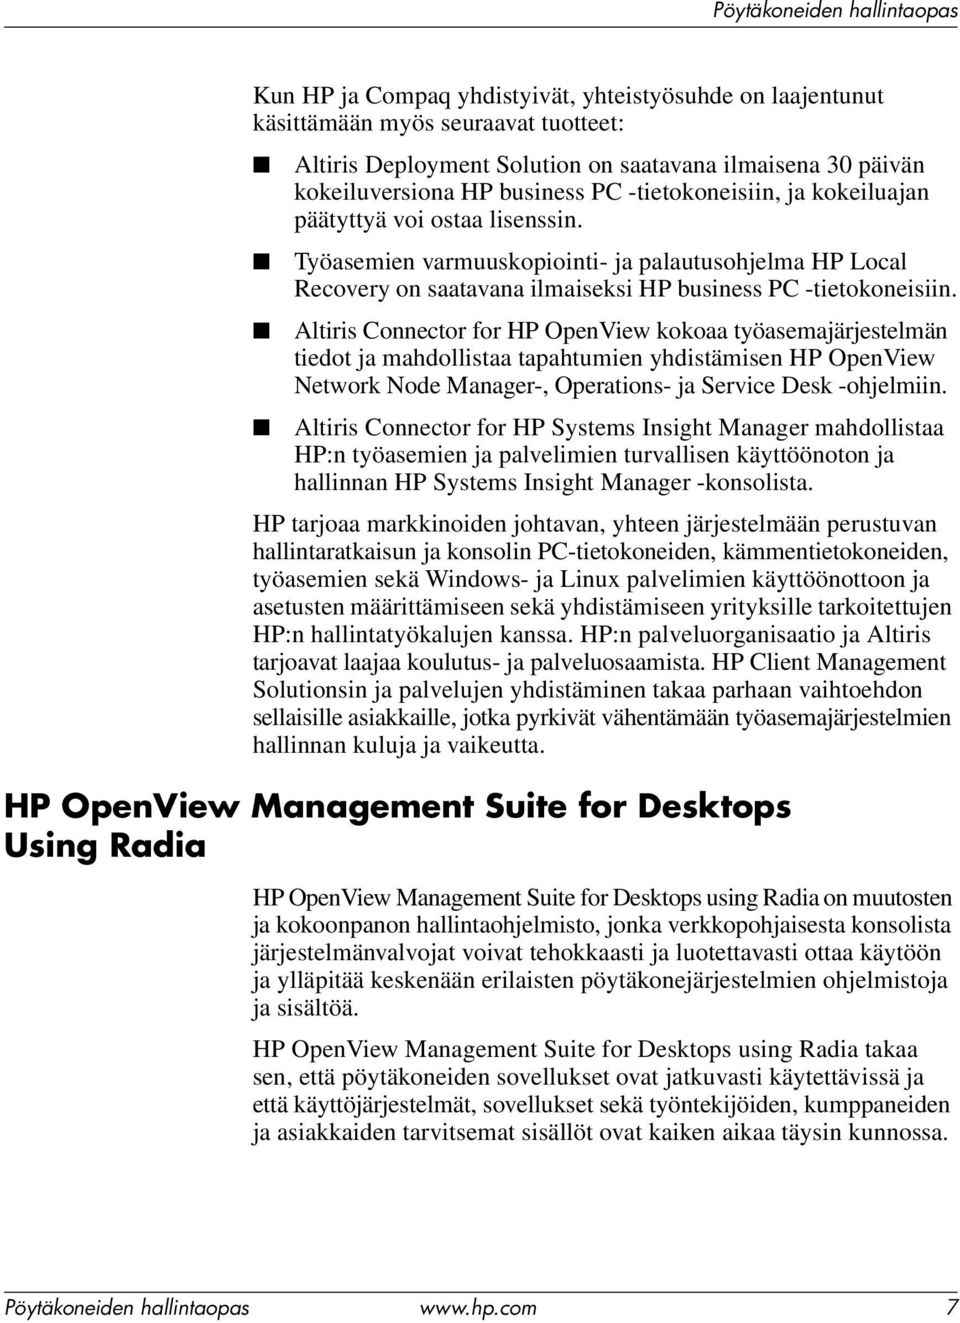 Altiris Connector for HP OpenView kokoaa työasemajärjestelmän tiedot ja mahdollistaa tapahtumien yhdistämisen HP OpenView Network Node Manager-, Operations- ja Service Desk -ohjelmiin.